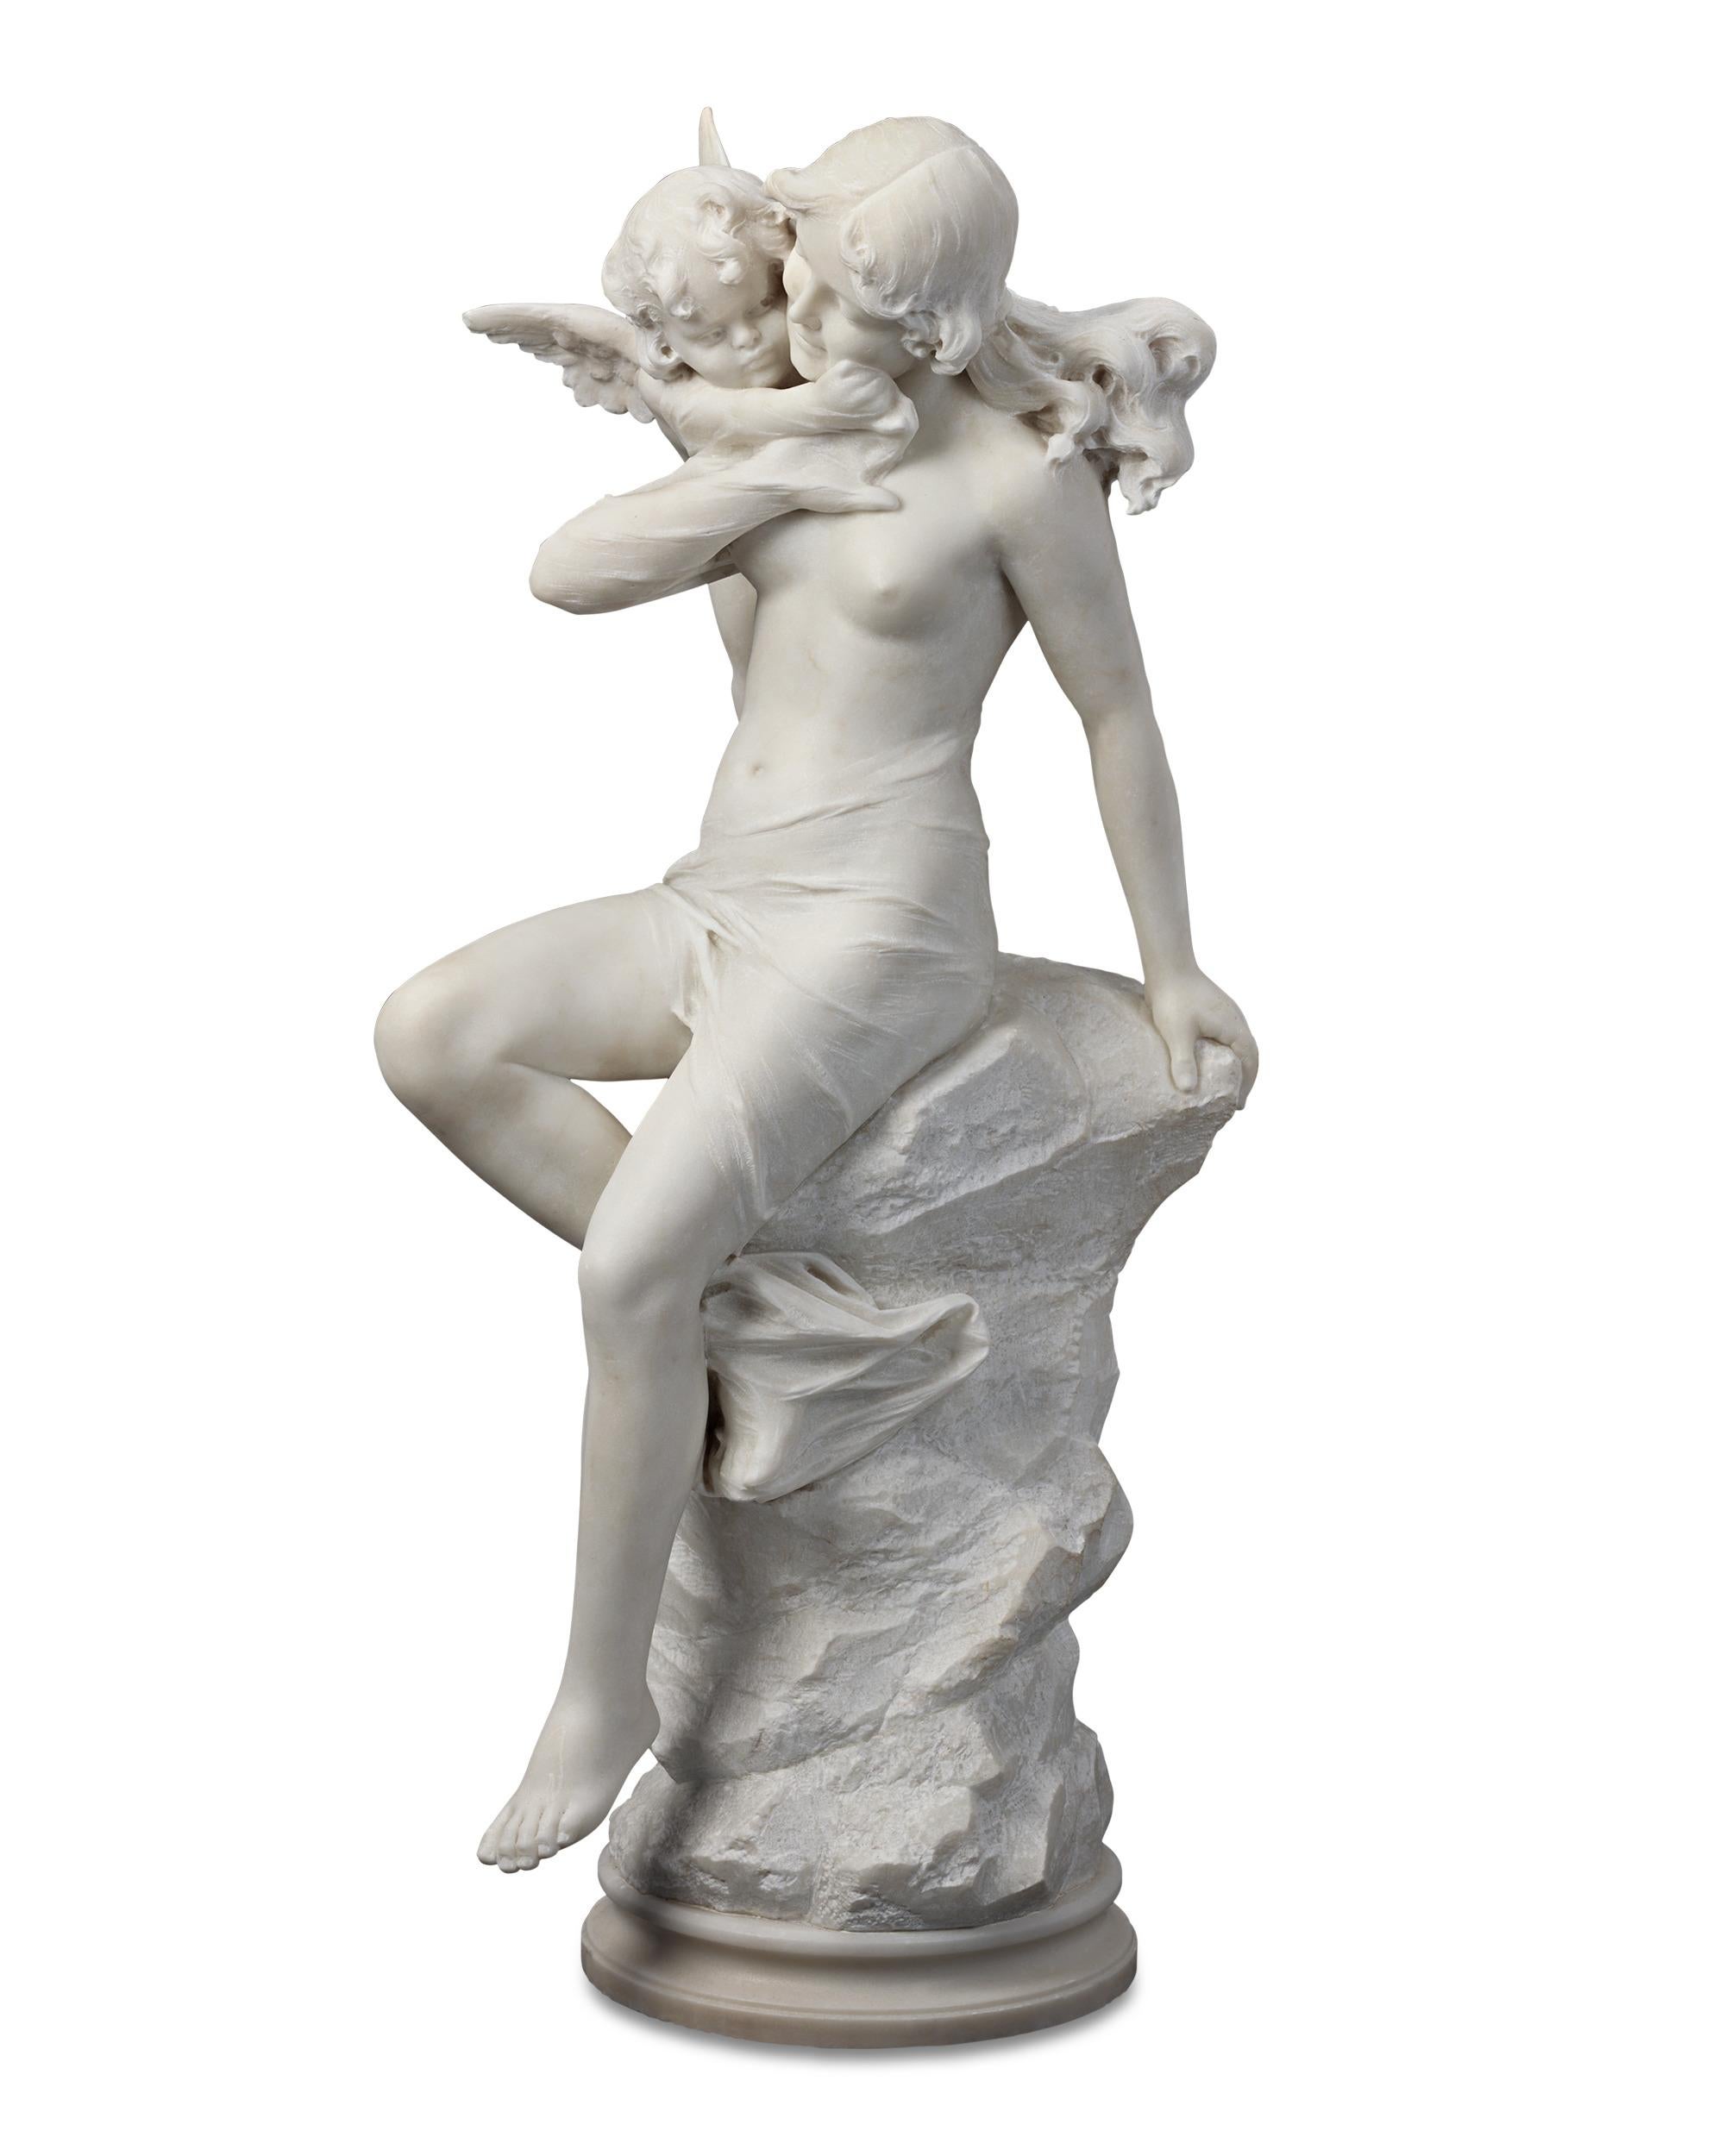 In dieser bemerkenswerten Skulptur aus weißem italienischem Marmor umarmen sich Venus und Amor in liebevoller und naturgetreuer Weise. Die weibliche Schönheit lehnt sich anmutig an den rauen Felsen, der einen gekonnten Kontrast zur geschmeidigen